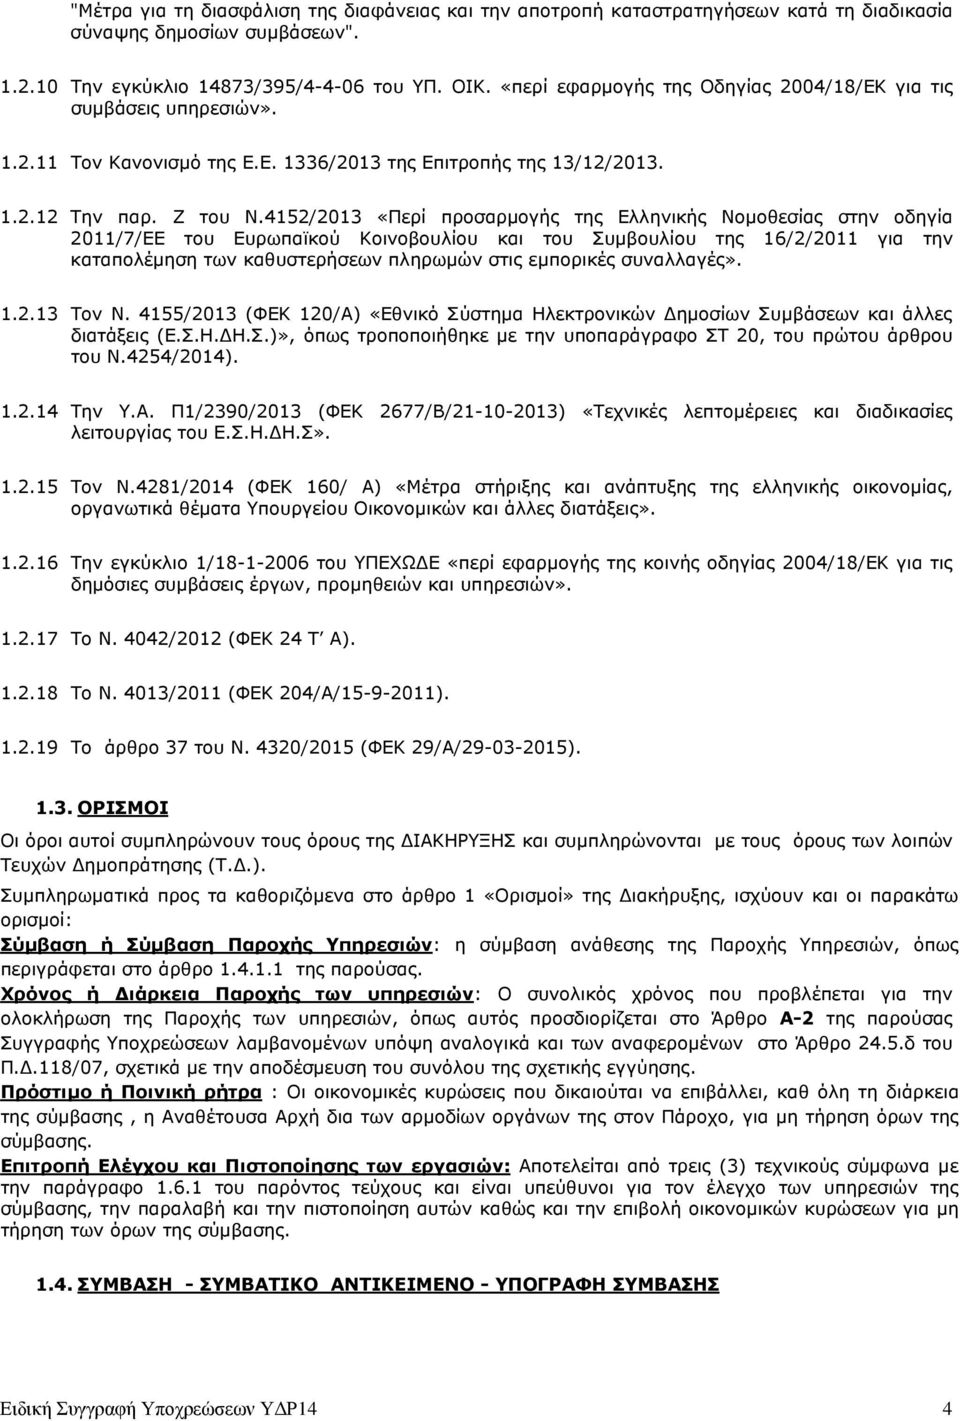 4152/2013 «Περί προσαρµογής της Ελληνικής Νοµοθεσίας στην οδηγία 2011/7/ΕΕ του Ευρωπαϊκού Κοινοβουλίου και του Συµβουλίου της 16/2/2011 για την καταπολέµηση των καθυστερήσεων πληρωµών στις εµπορικές